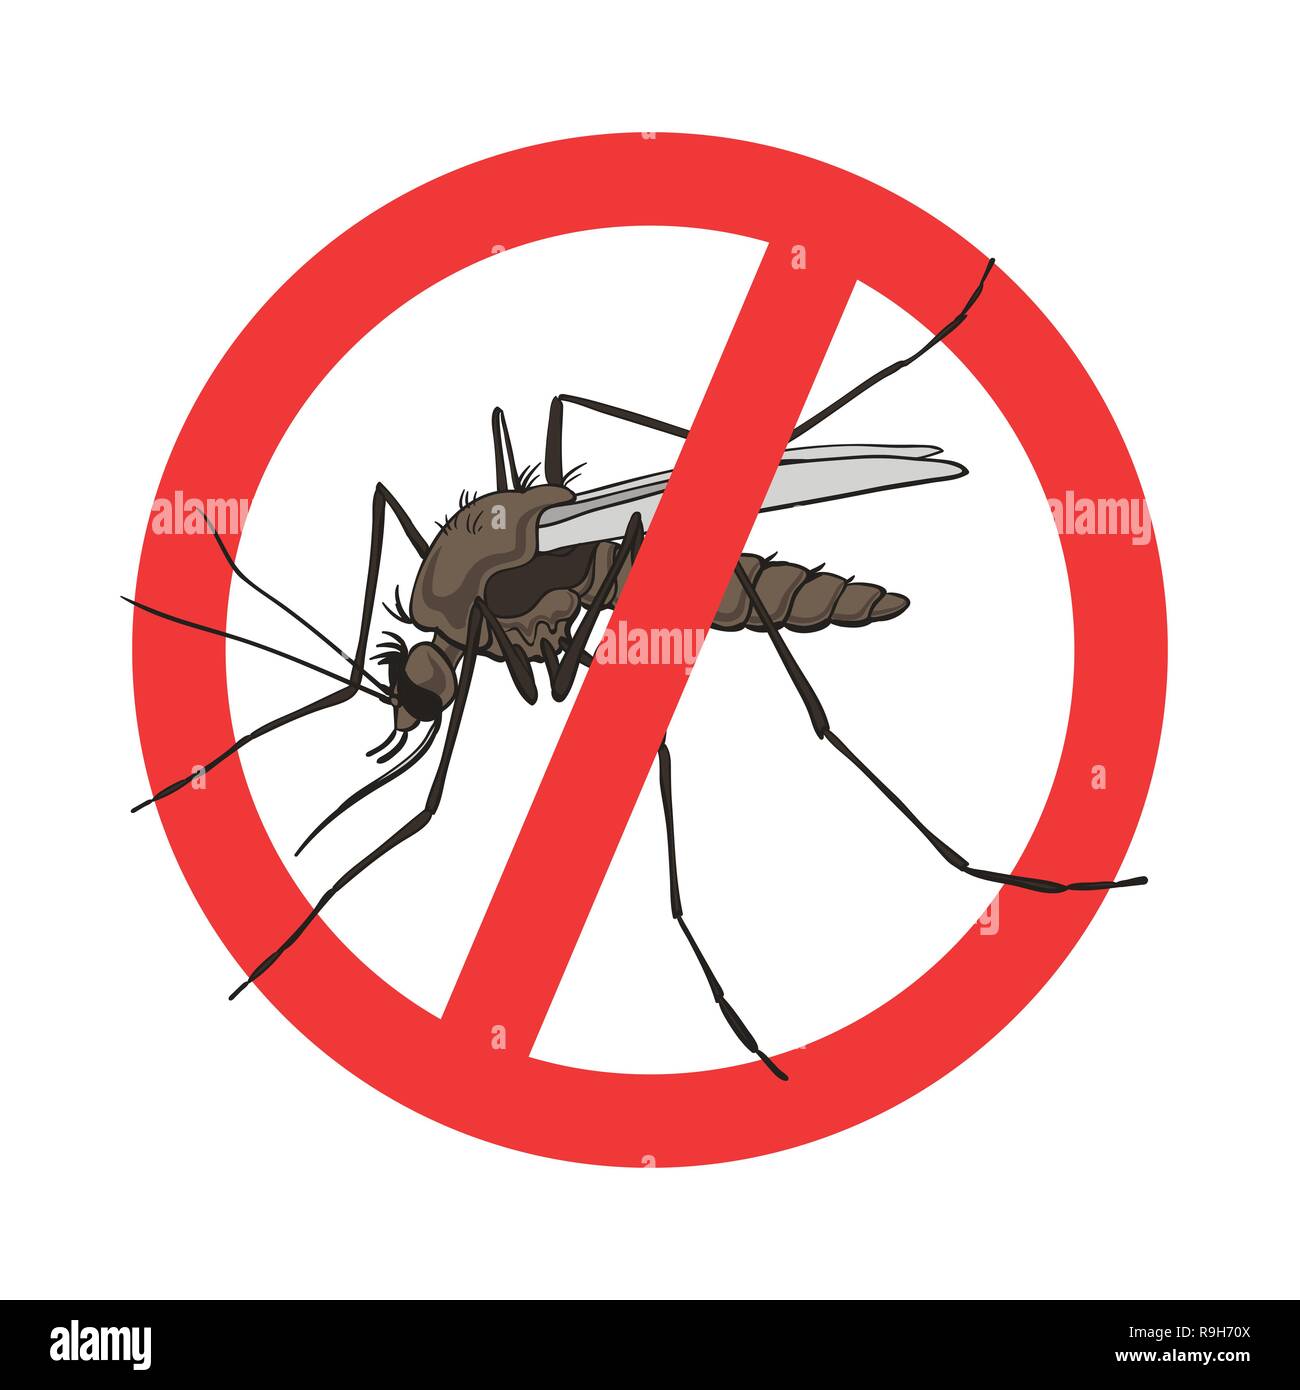 Parada signo de mosquito, vector de imagen en un círculo rojo tachado. Advertencia de mosquitos, prohibido firmar ningún mosquito Ilustración del Vector